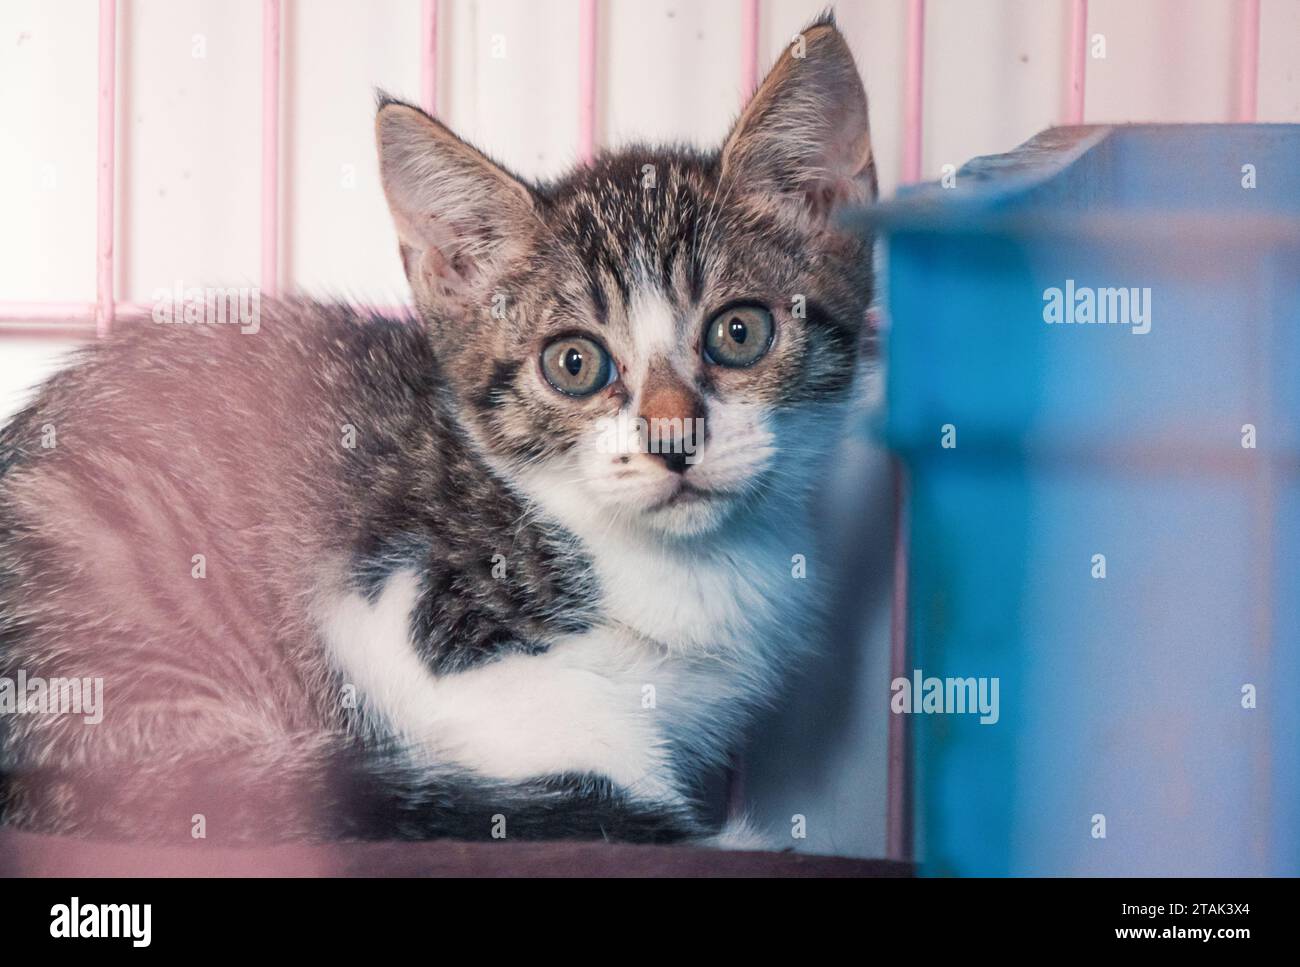 Gattino randagio solitario nella gabbia in un rifugio per animali domestici, soffrendo la fame la vita miserabile, i senzatetto. Concetto di rifugio per animali Foto Stock